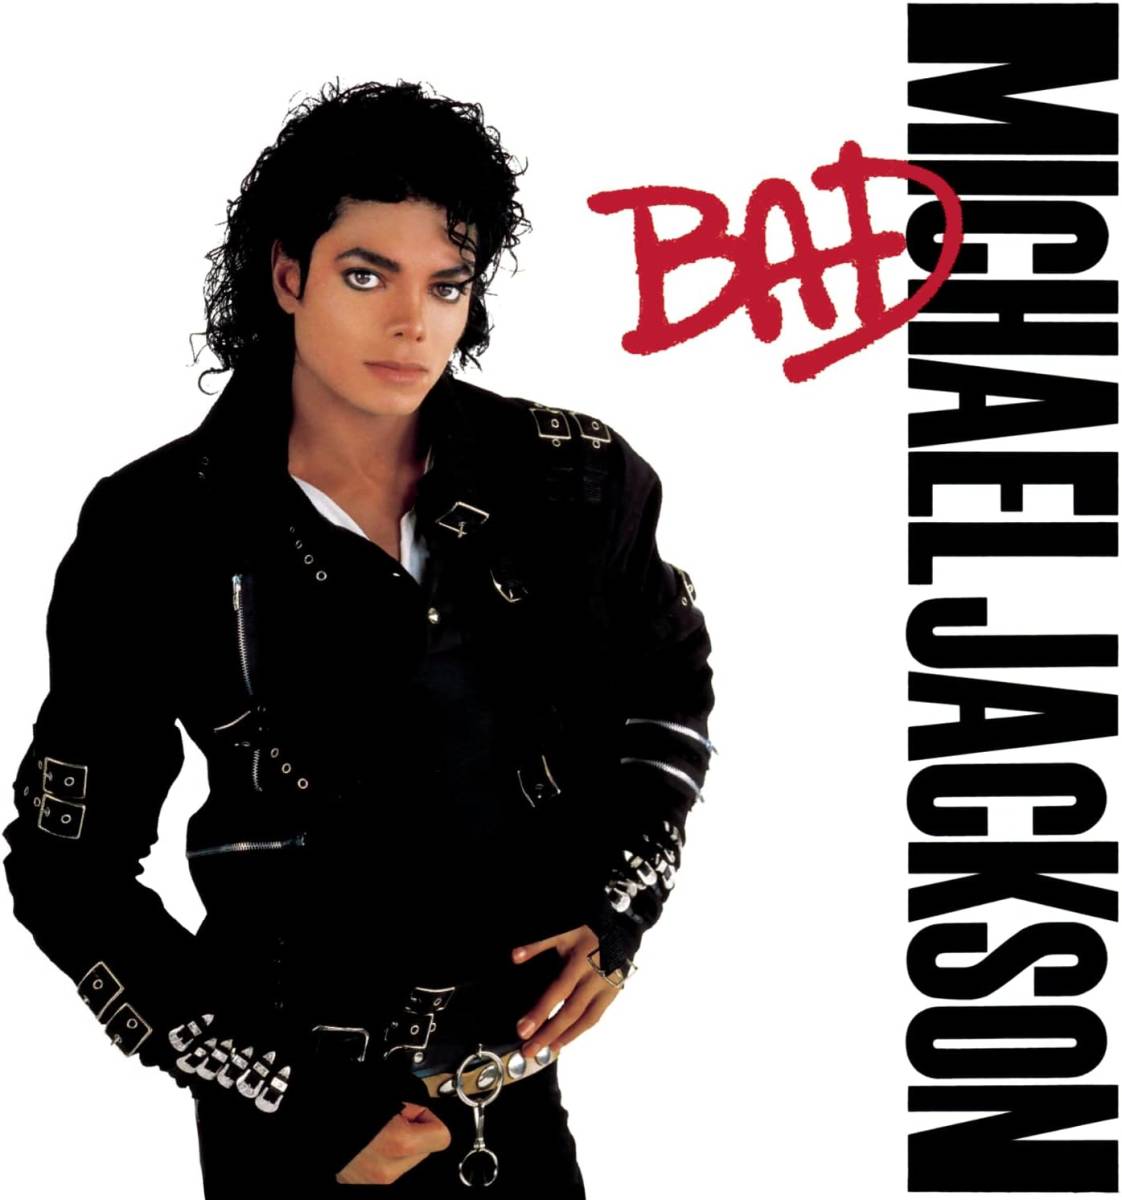 Bad マイケル・ジャクソン 輸入盤CD_画像1